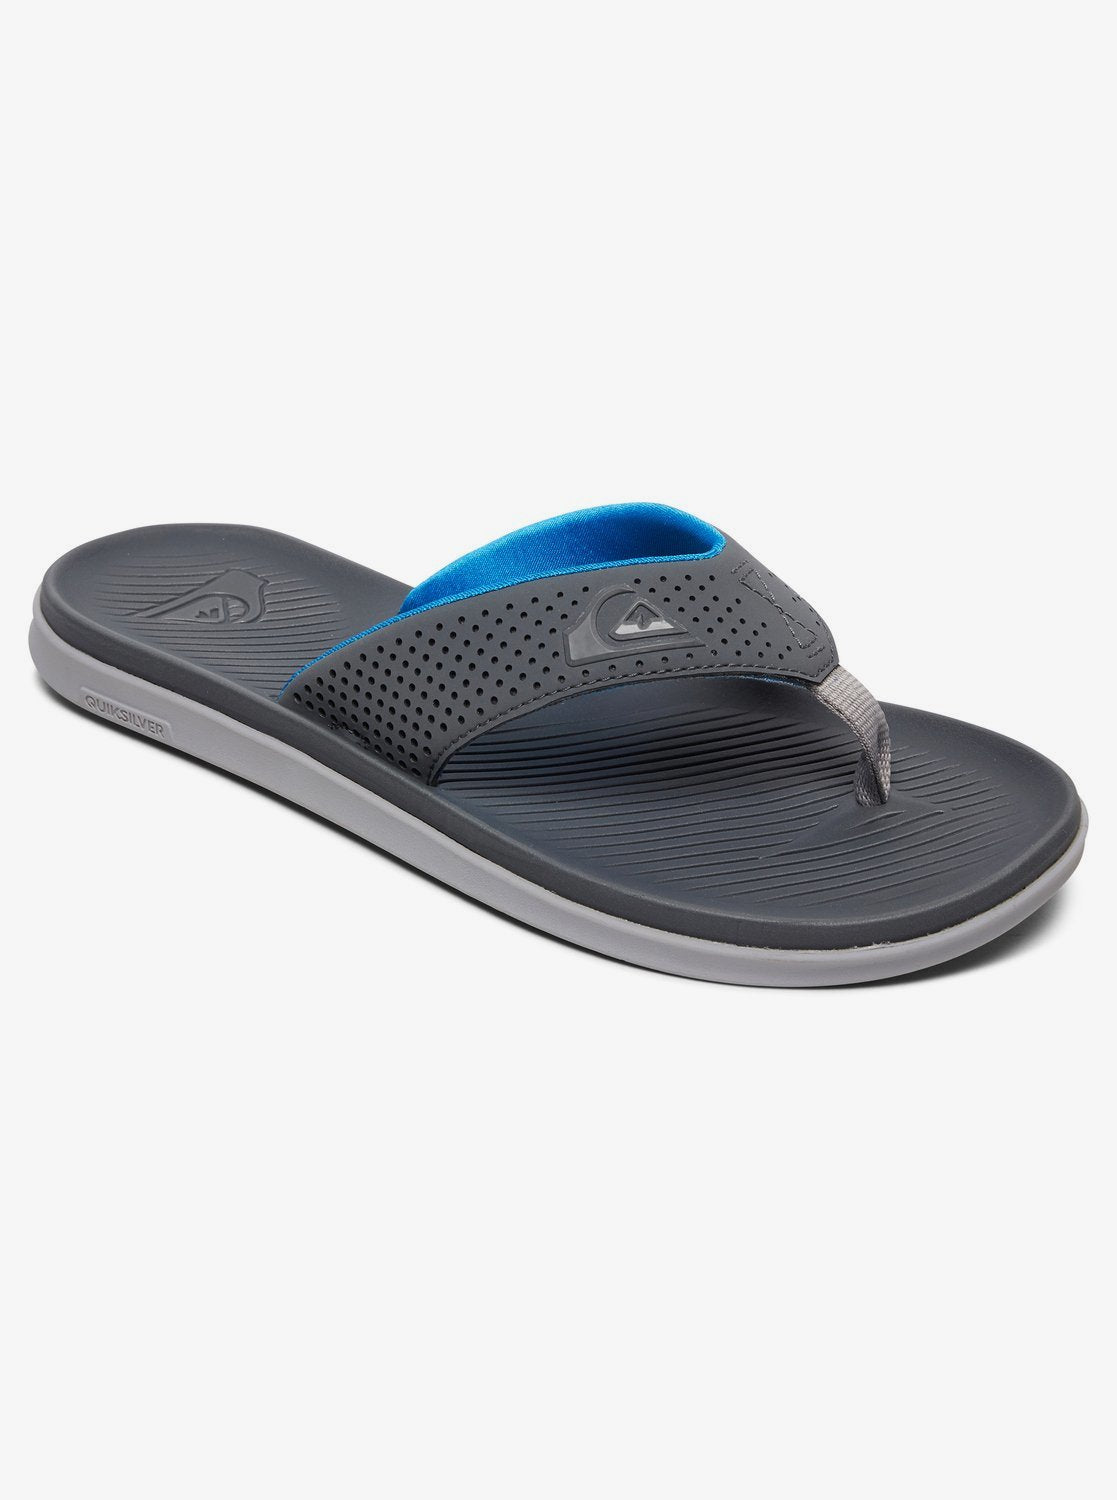 Quiksilver Men's Haleiwa Plus Flip Flops Sandals Grey Gray Blue